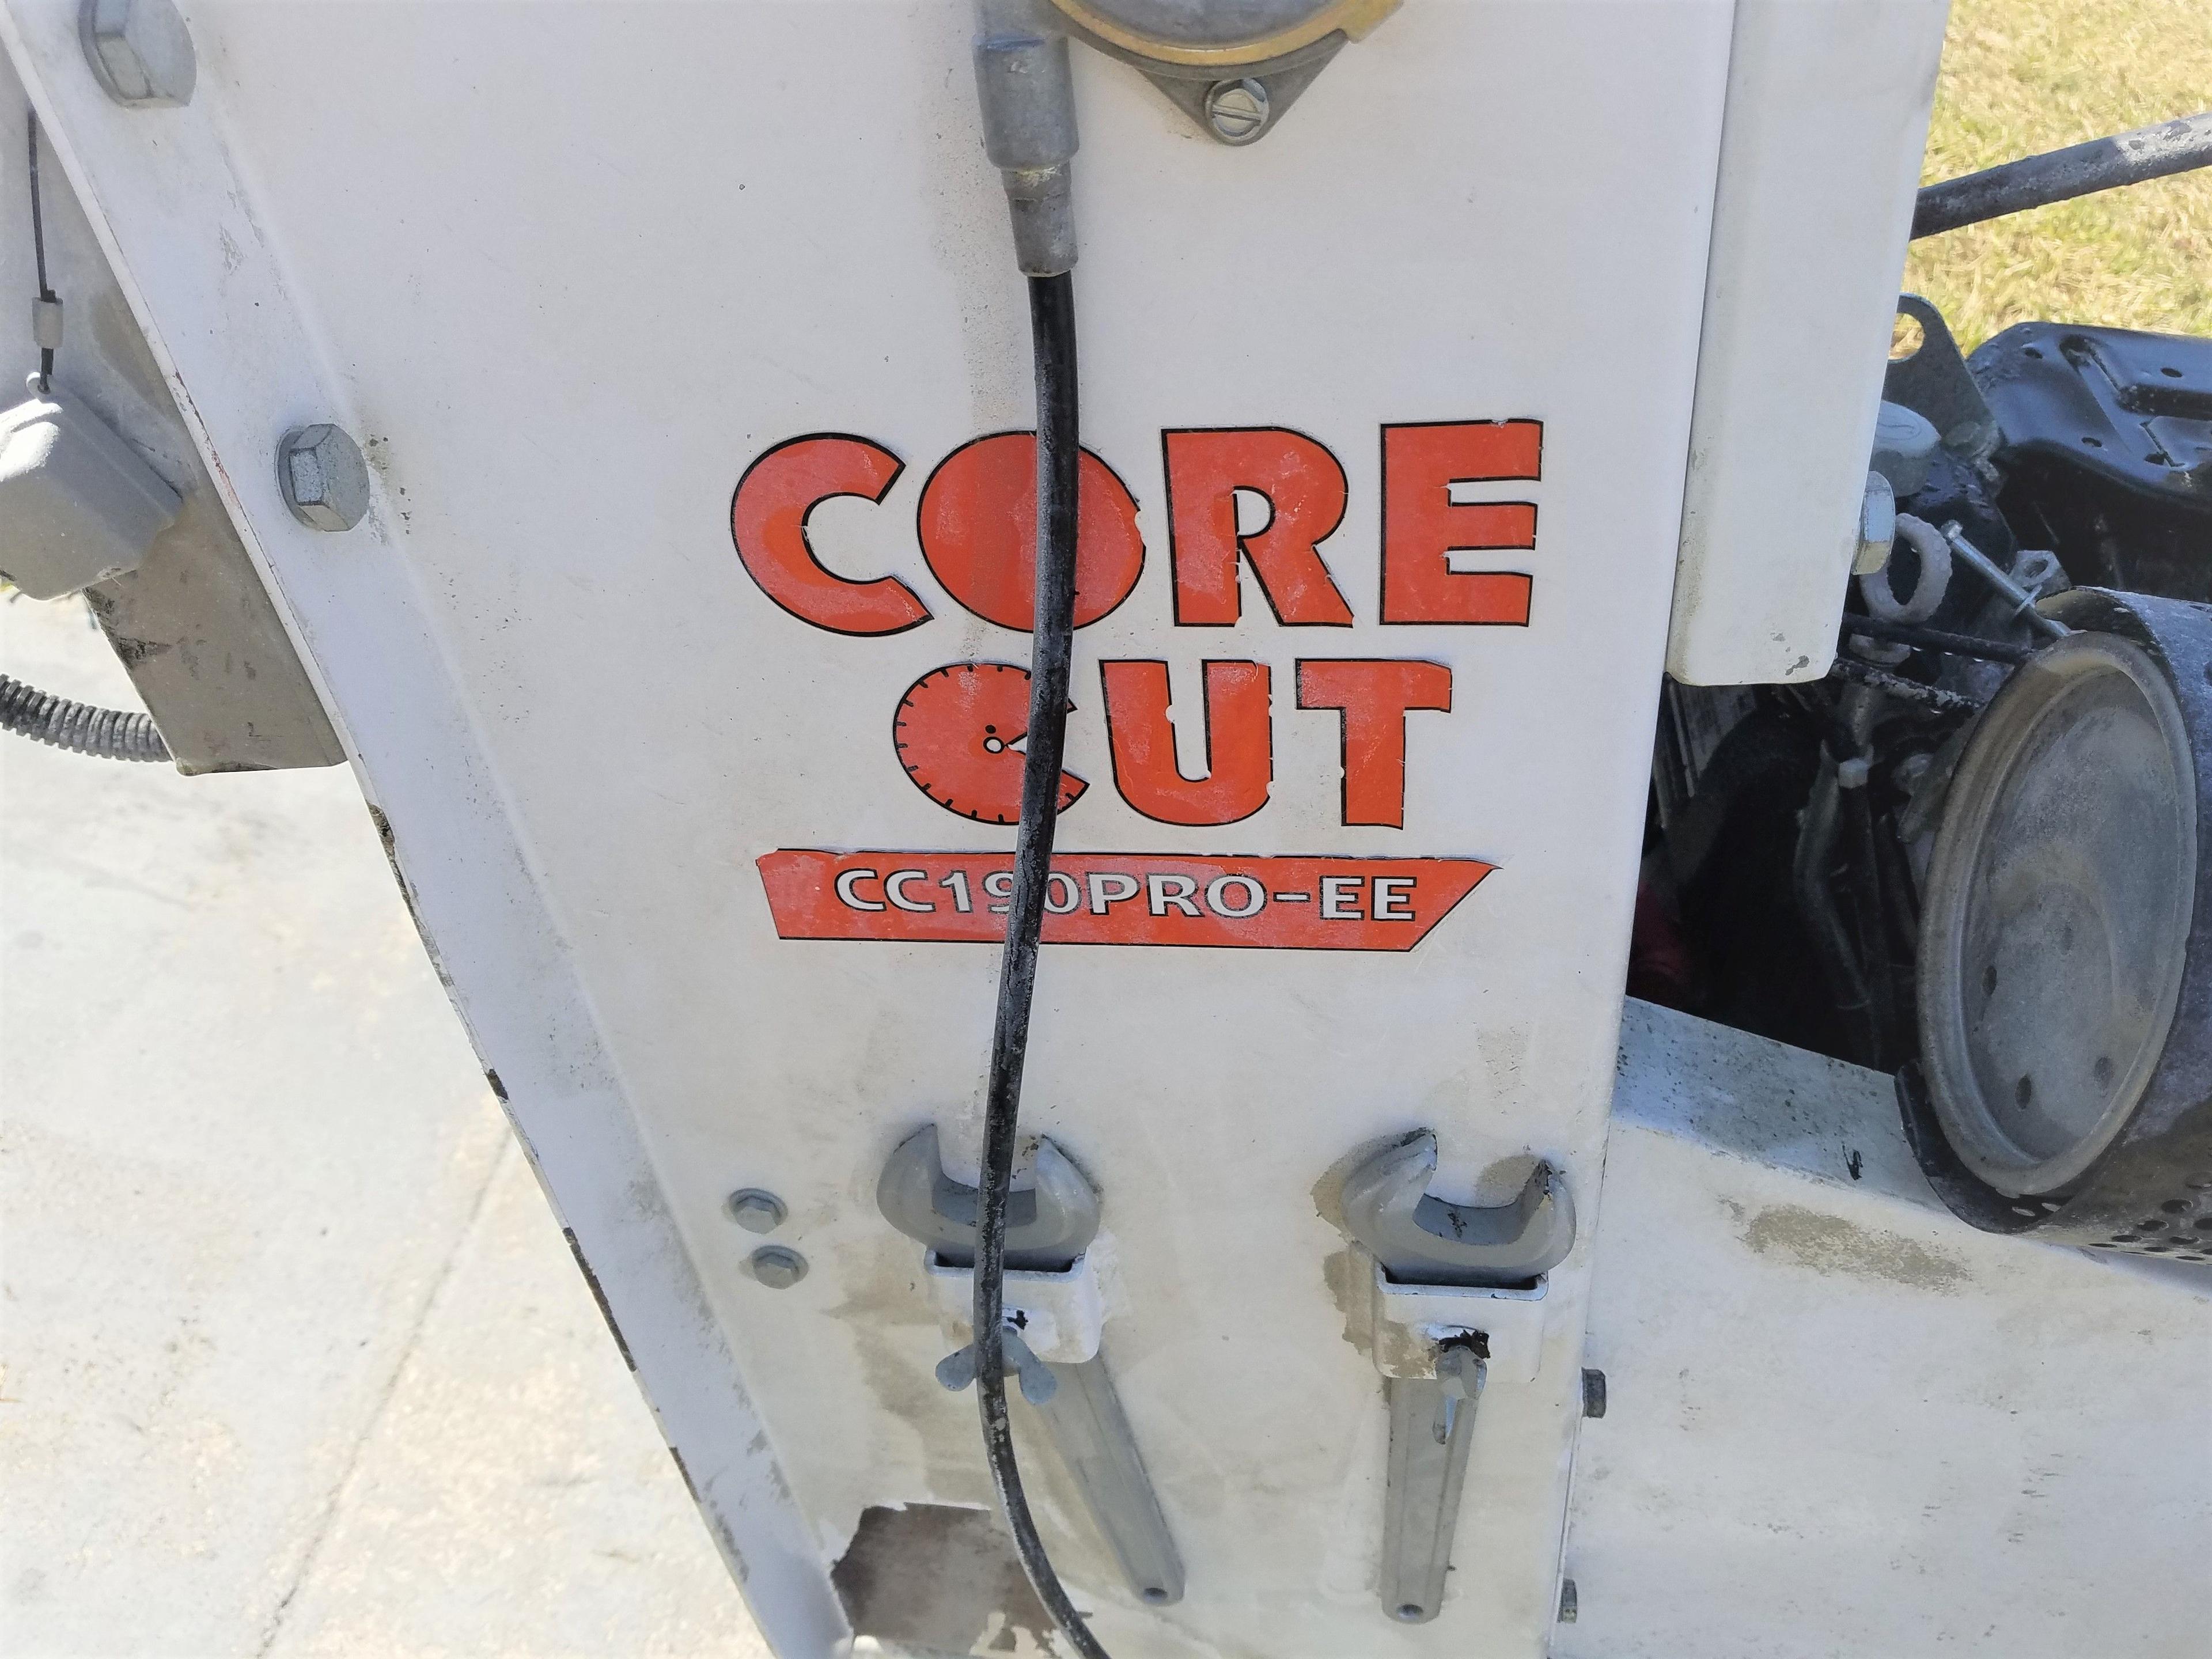 Core Cut CoreCut CC190PRO-EE Concrete Saw 44 Hours Retail $11k